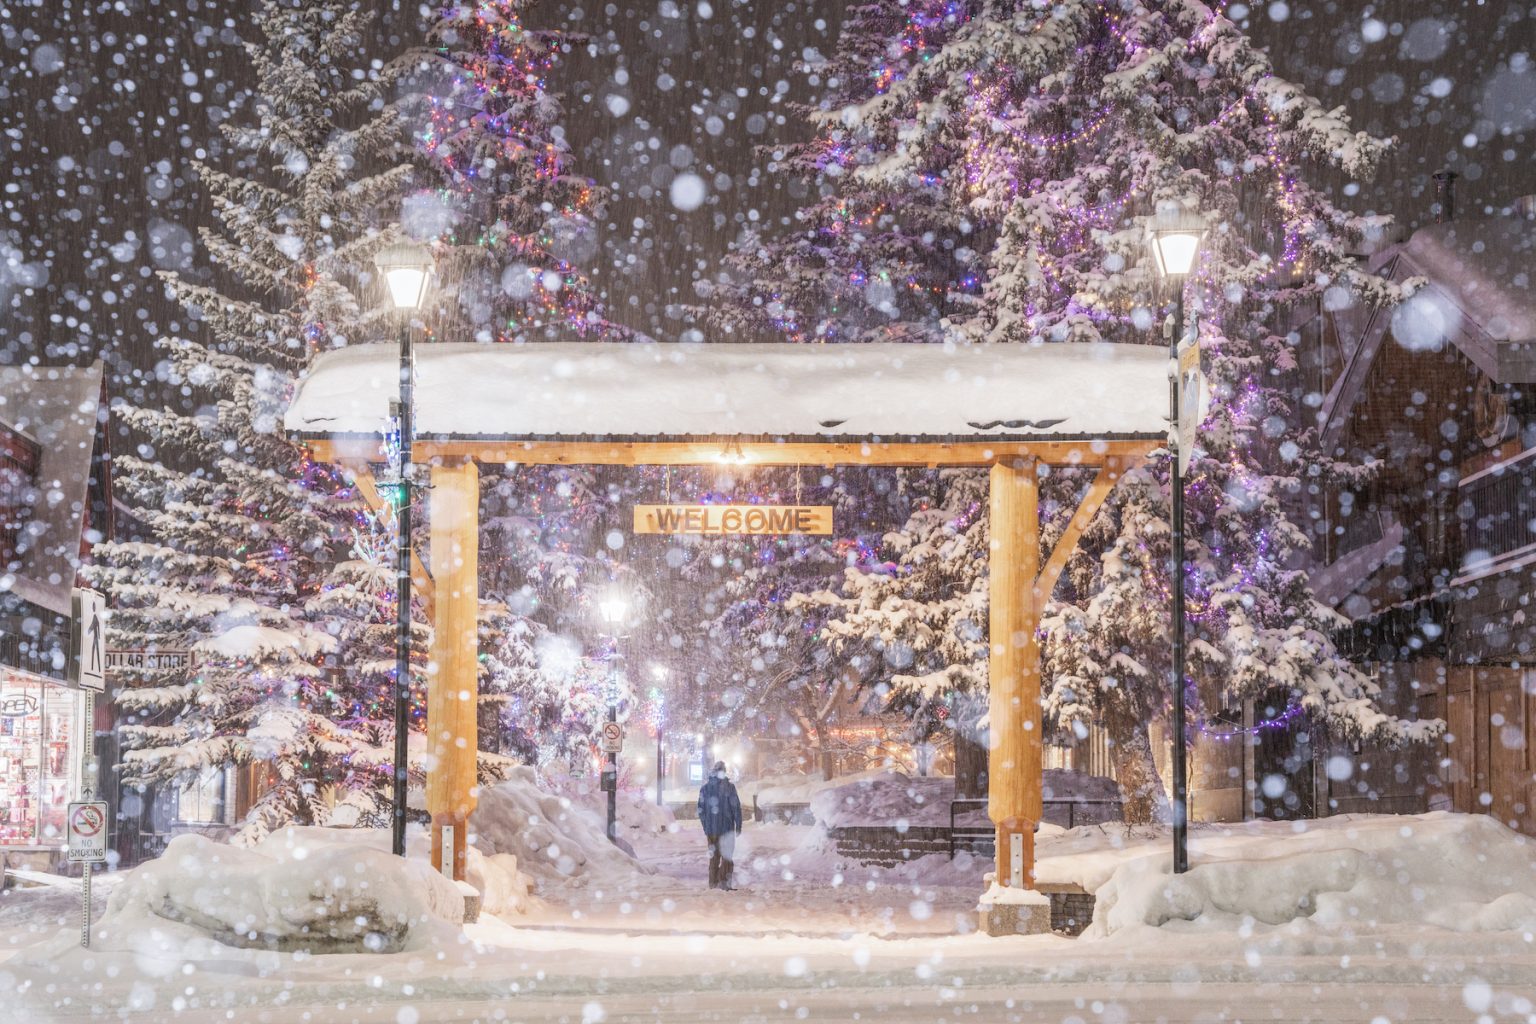 "Snowy Downtown, the Platzl." Photo by Mitch Winton.